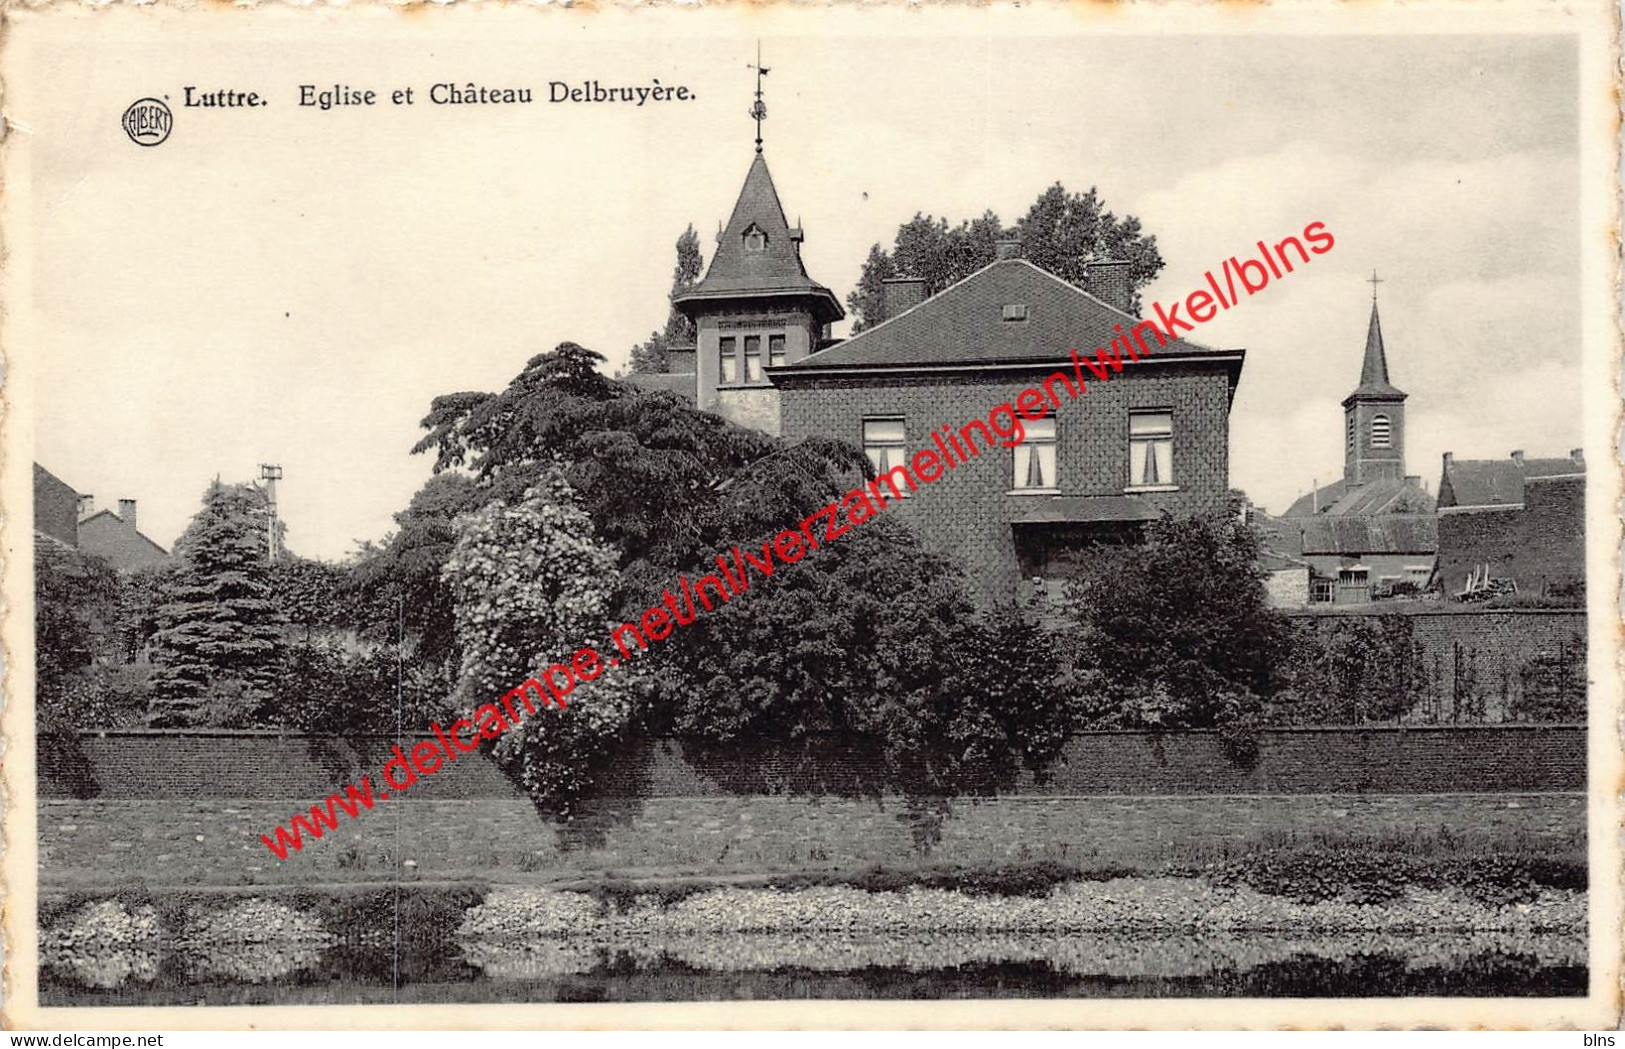 Eglise Et Château Delbruyère - Luttre - Pont-à-Celles